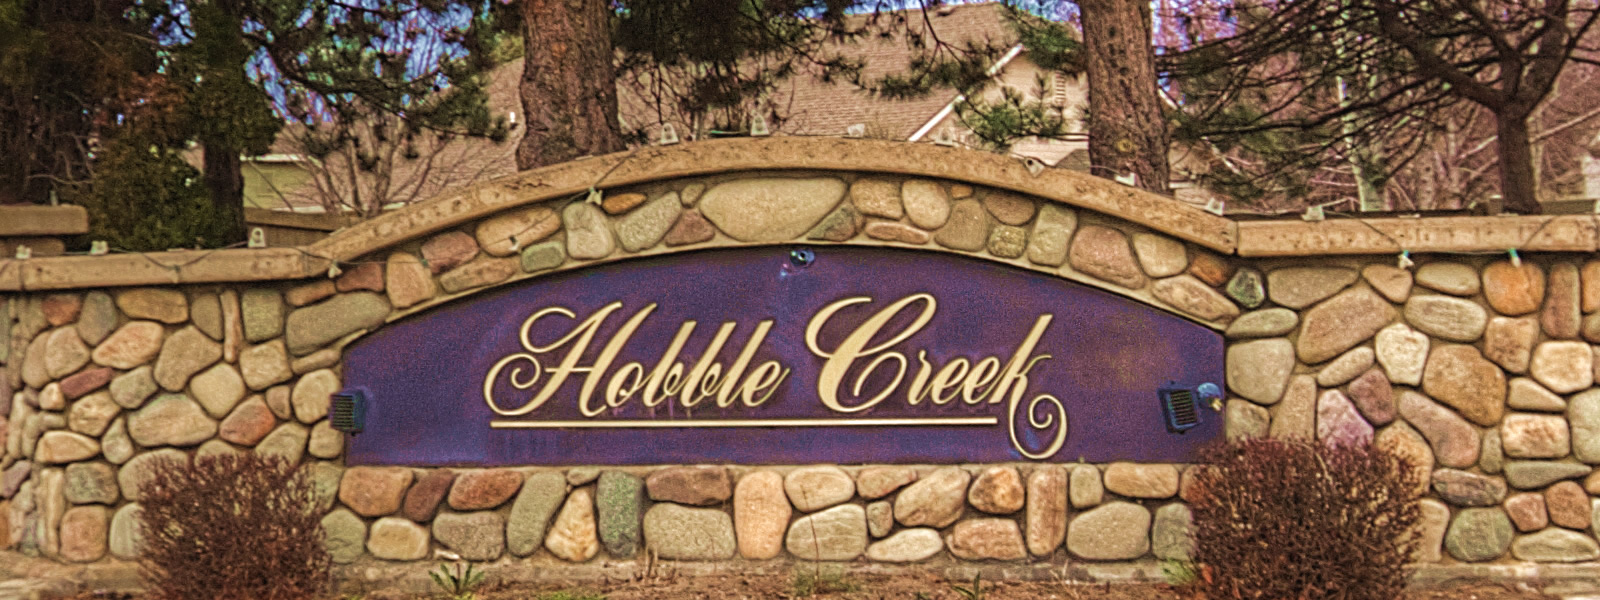 Hobble Creek Boise